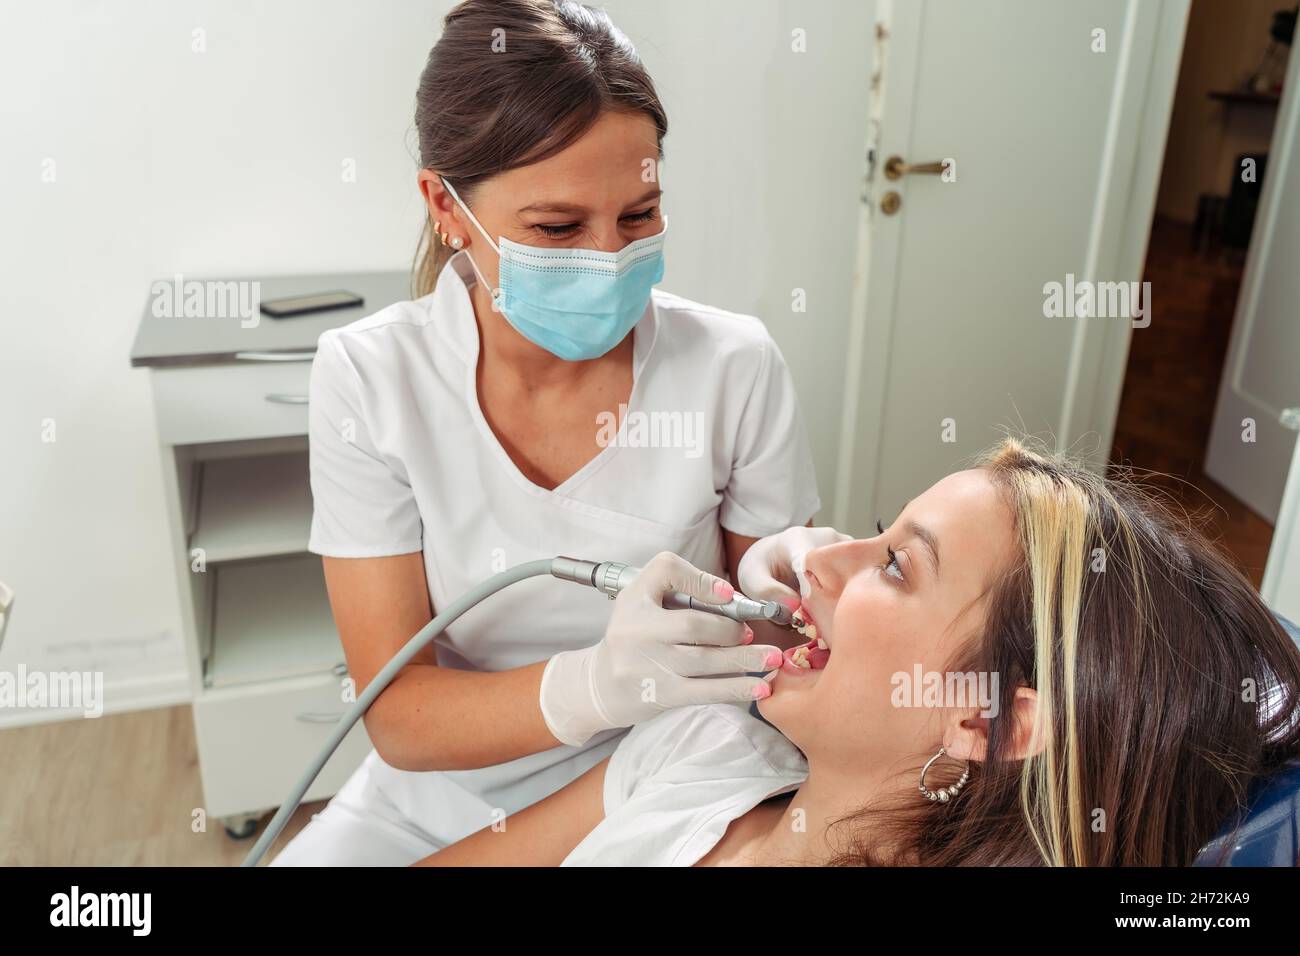 Jeune dentiste féminin effectuant un traitement de tour sur un patient adolescent.Concept soins dentaires, soins de santé. Banque D'Images